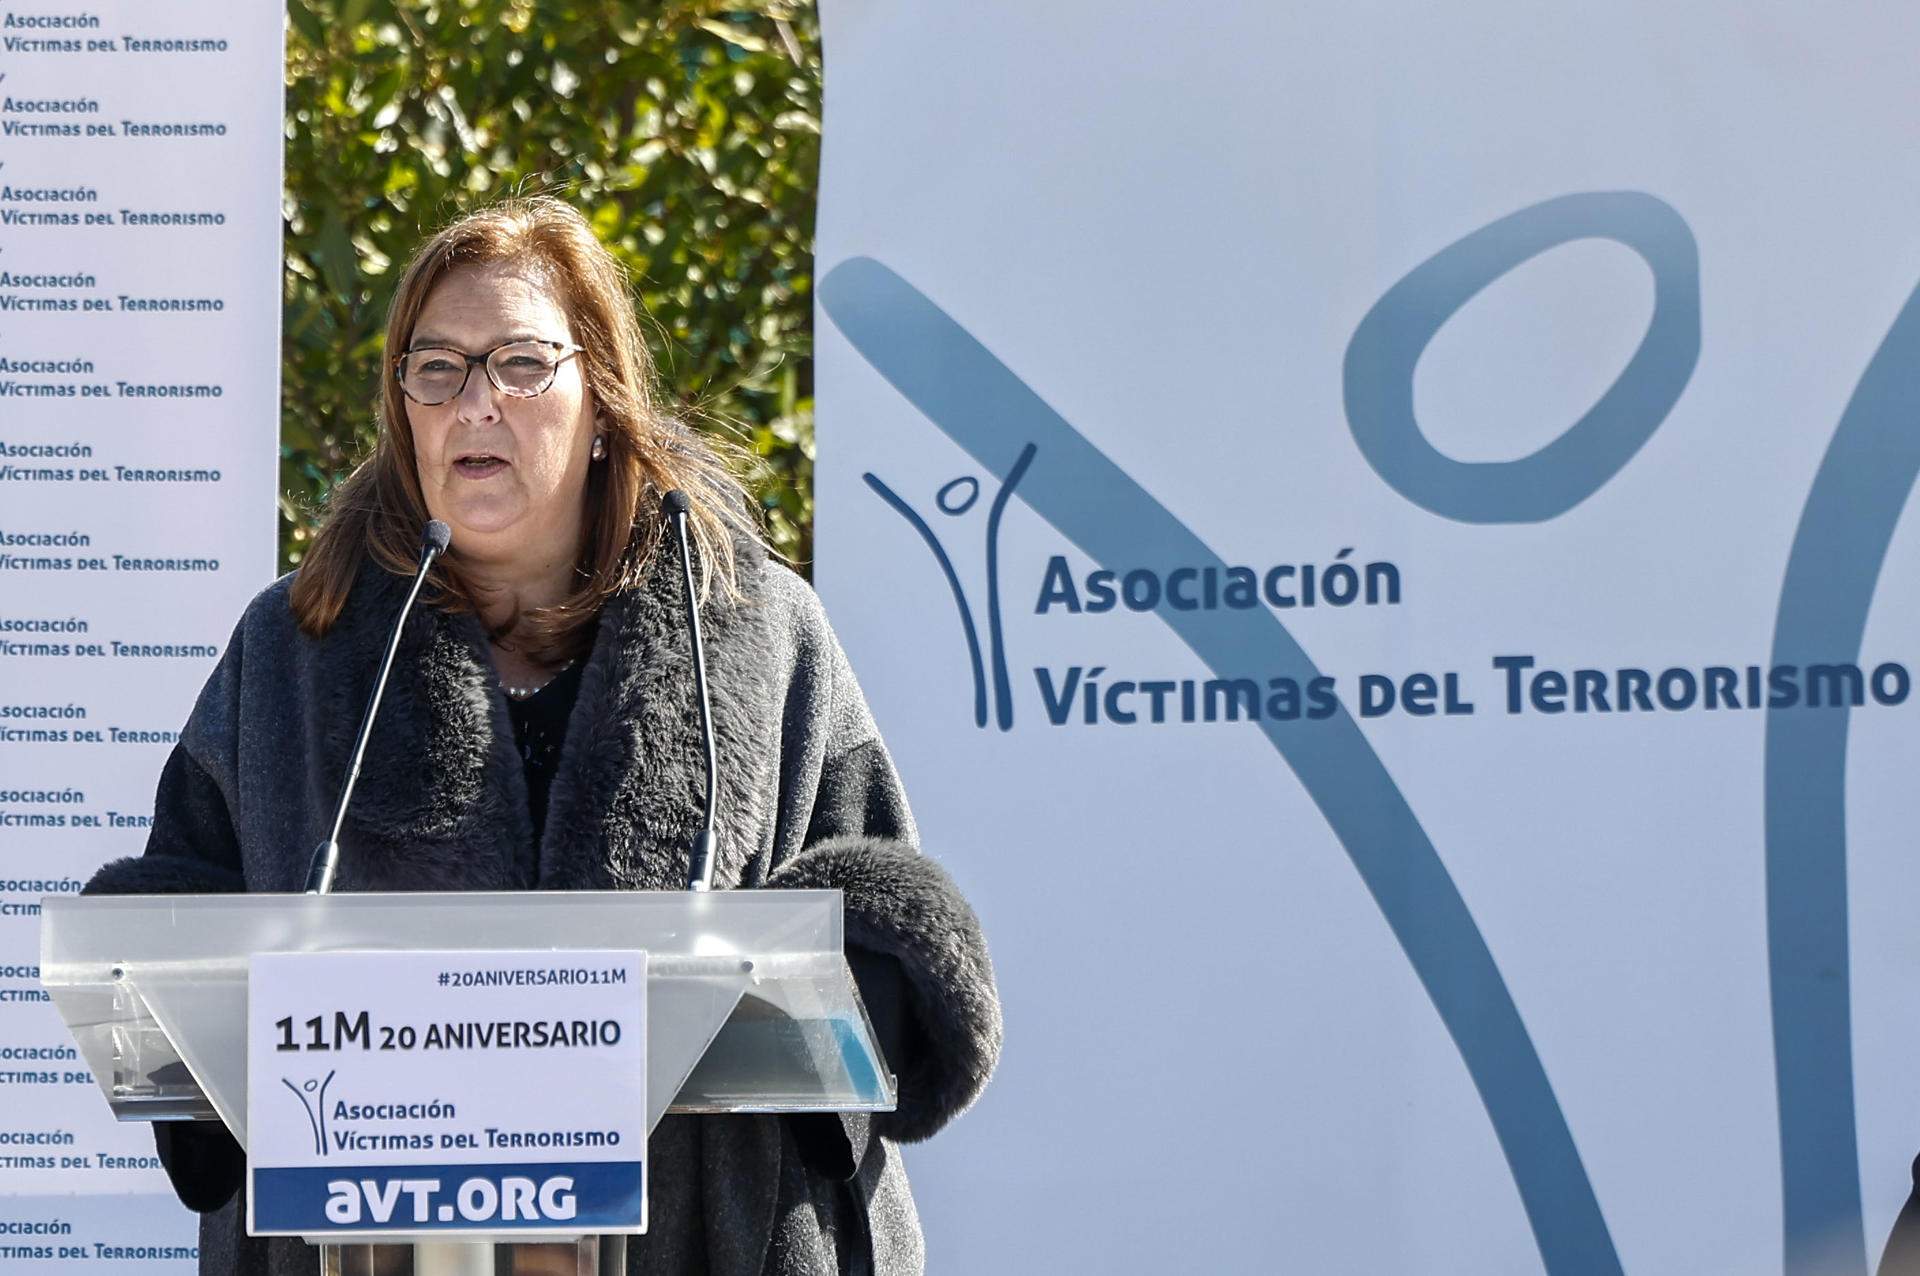 L’Associació de Víctimes del Terrorisme carrega contra Sánchez i Marlaska en l’acte de l’11-M